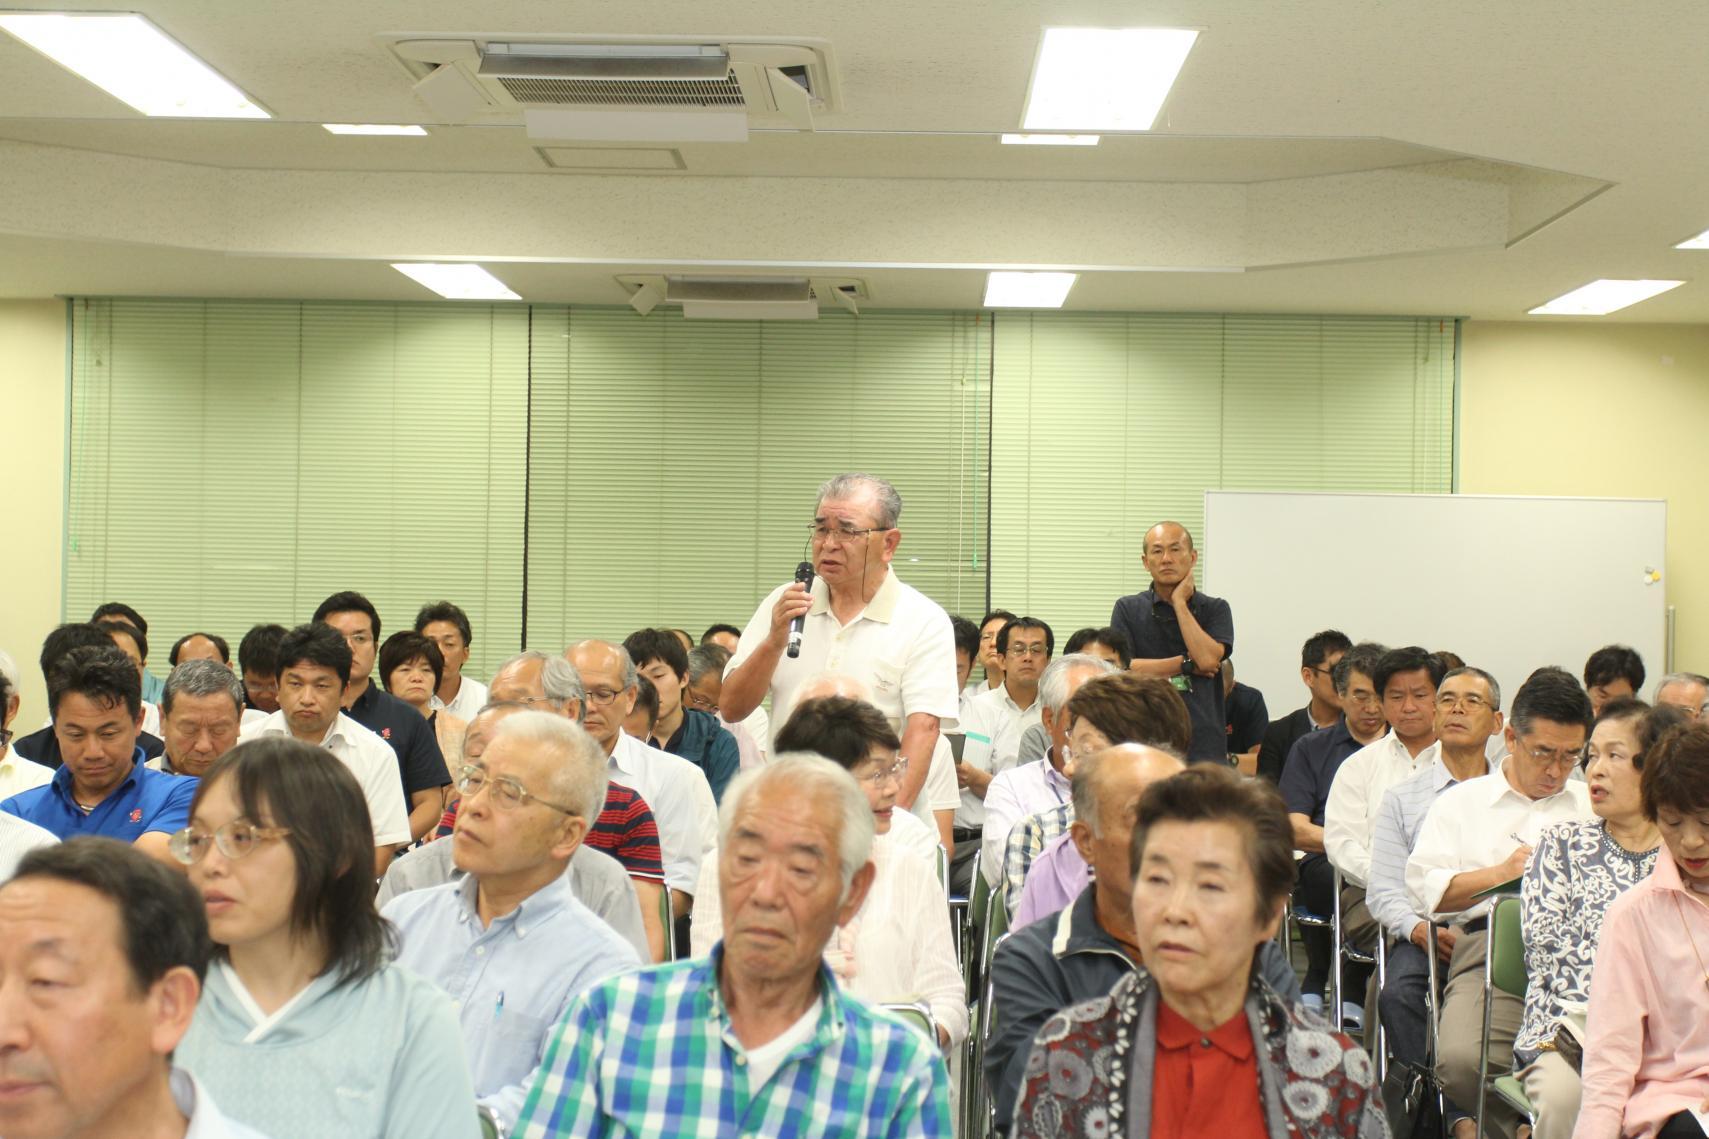 真崎地区村政懇談会にて、客席側でマイクを持ち席を立って意見を述べている男性と意見を聞いている参加者たちの写真